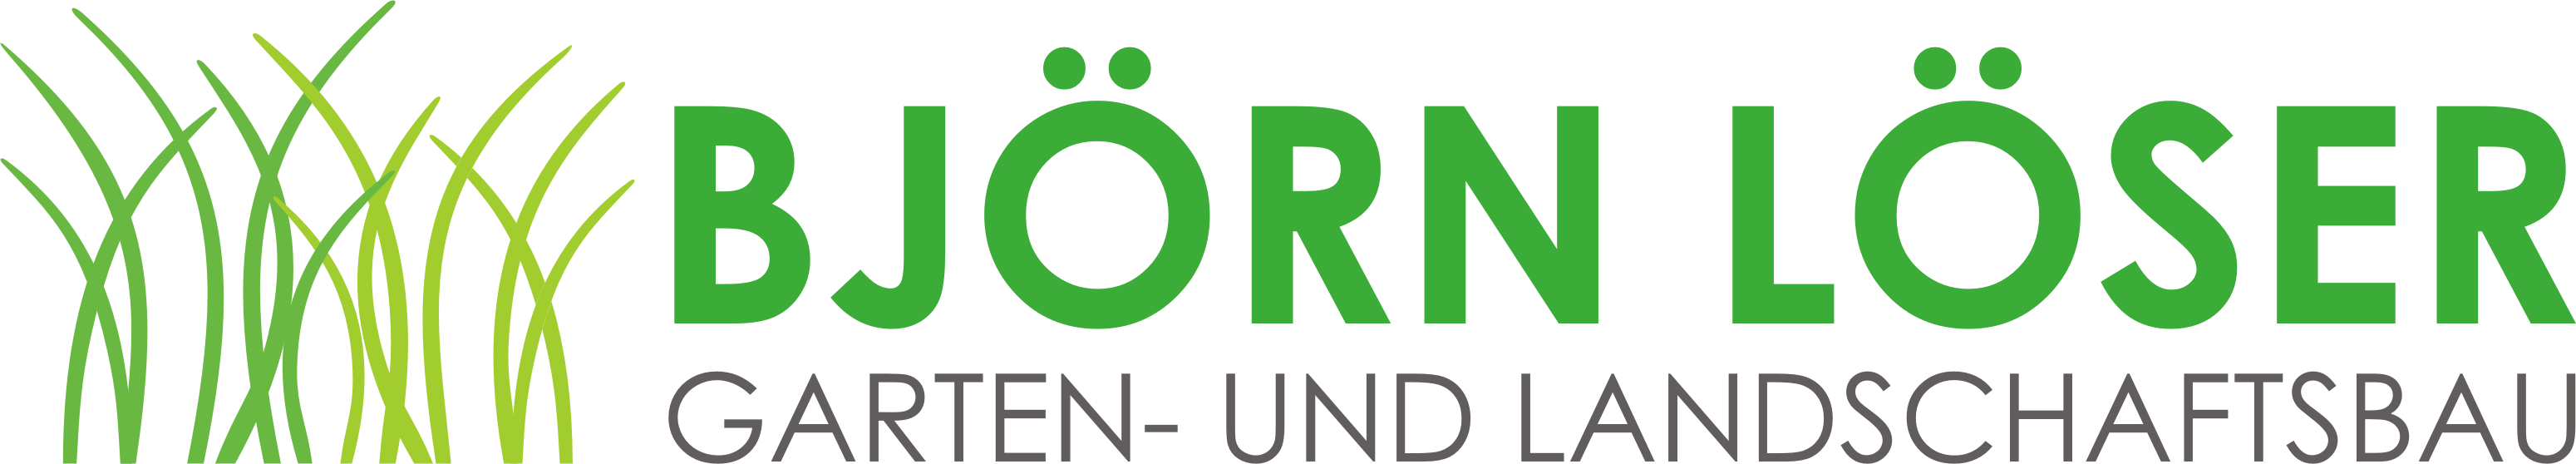 Gartengestaltung Trieschmann Logo